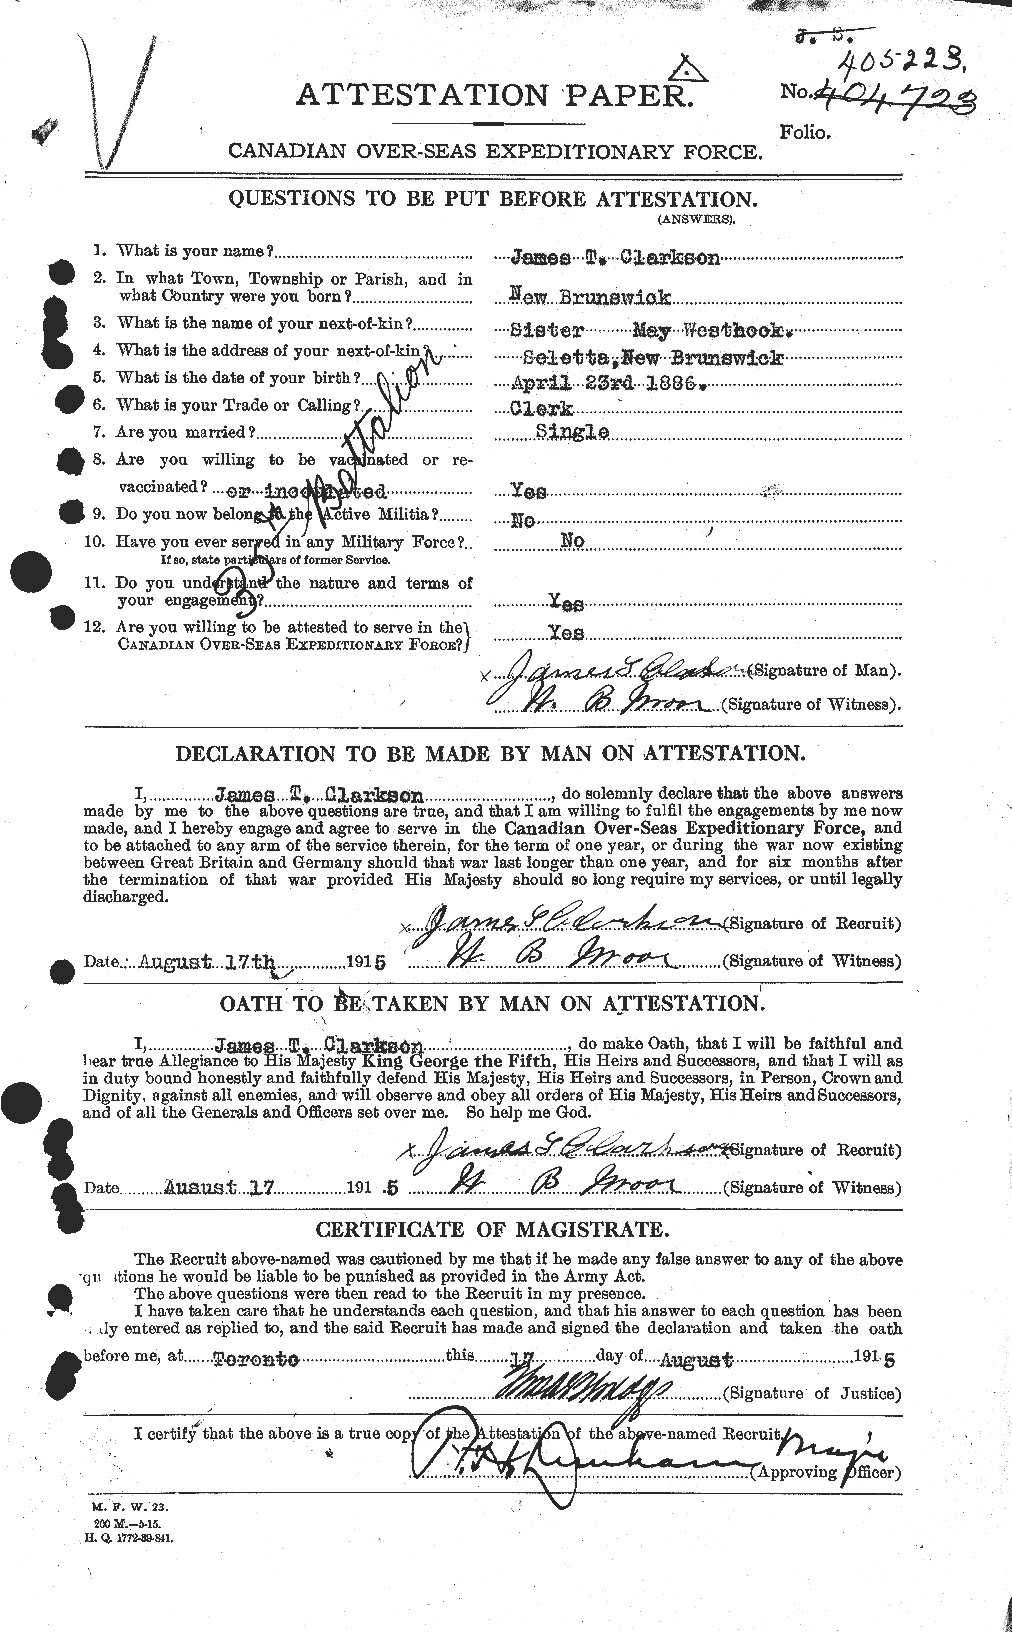 Dossiers du Personnel de la Première Guerre mondiale - CEC 021450a